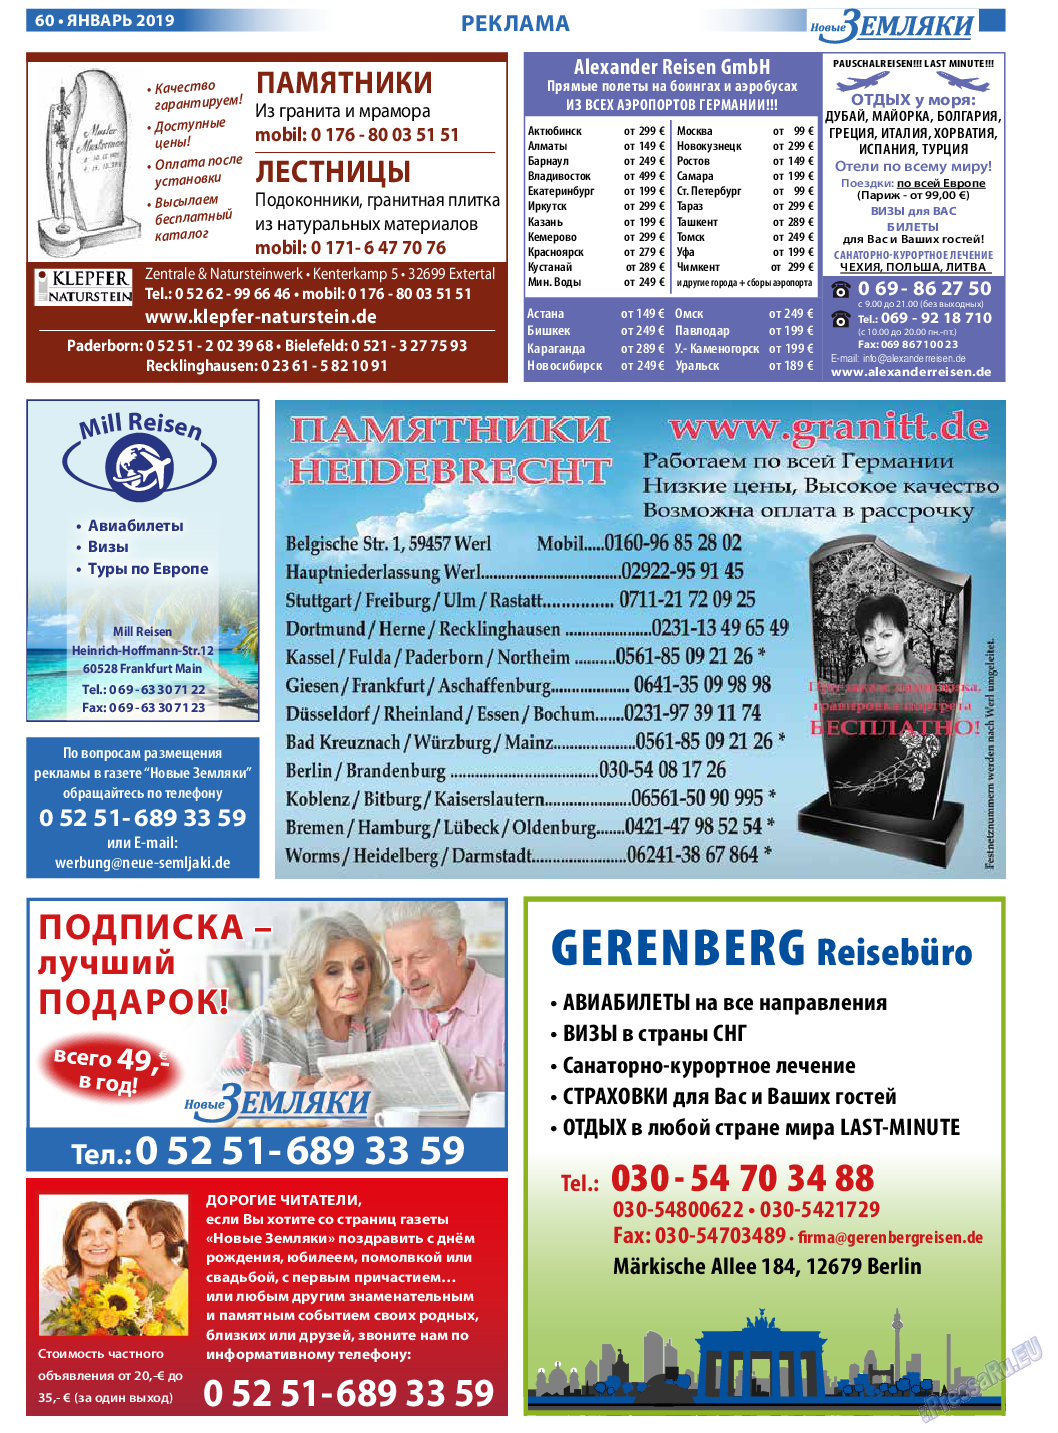 Новые Земляки (газета). 2019 год, номер 1, стр. 60